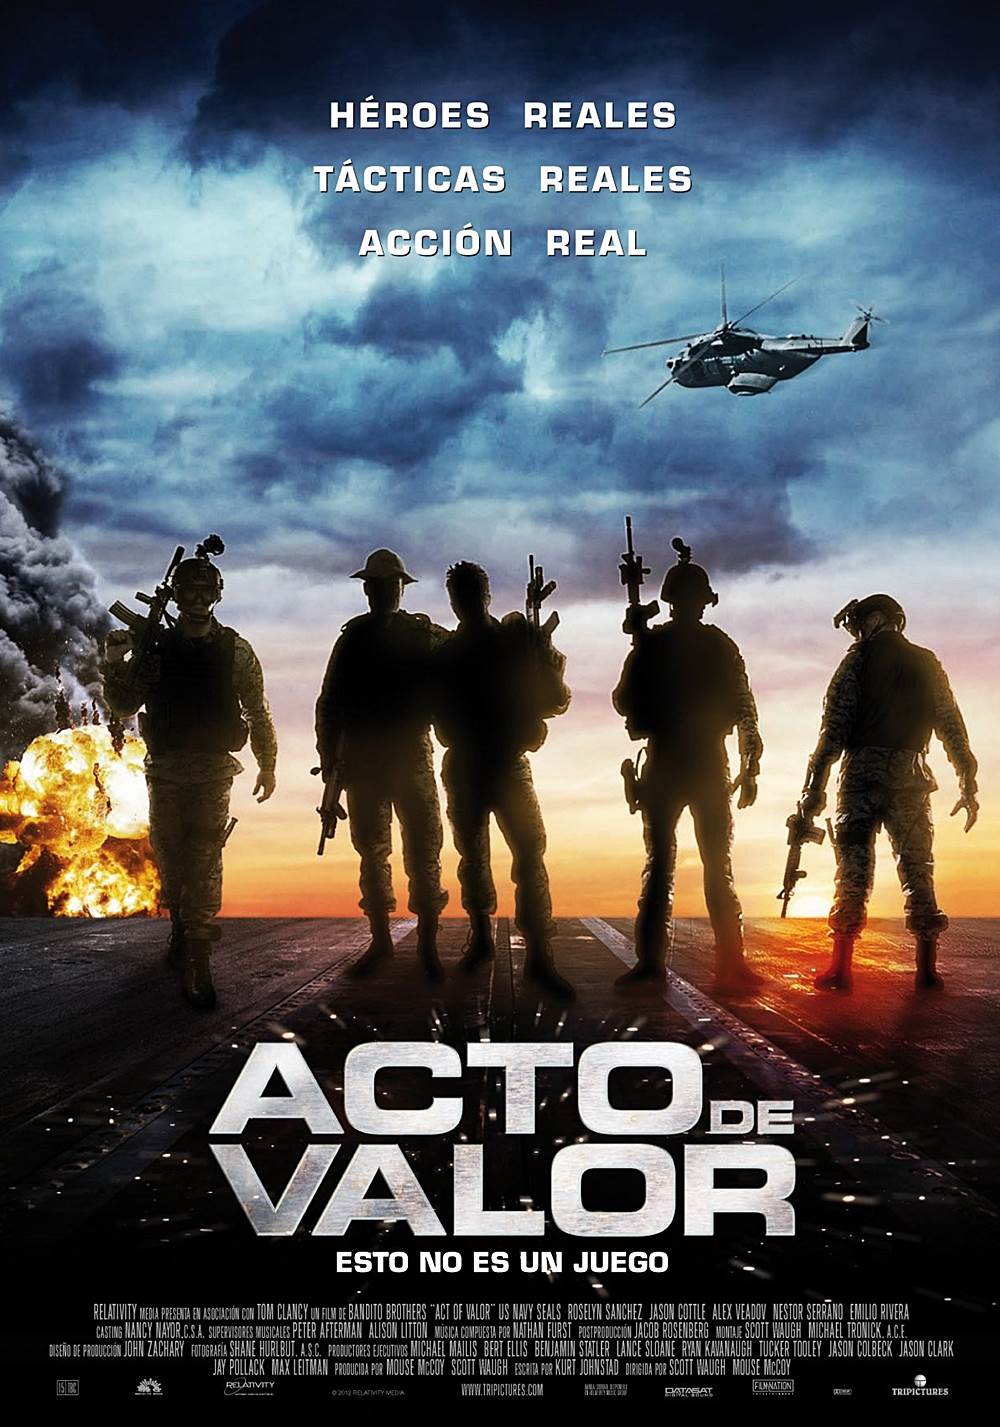 ดูหนังออนไลน์ฟรี Act of Valor (2012) หน่วยพิฆาตระห่ำกู้โลก